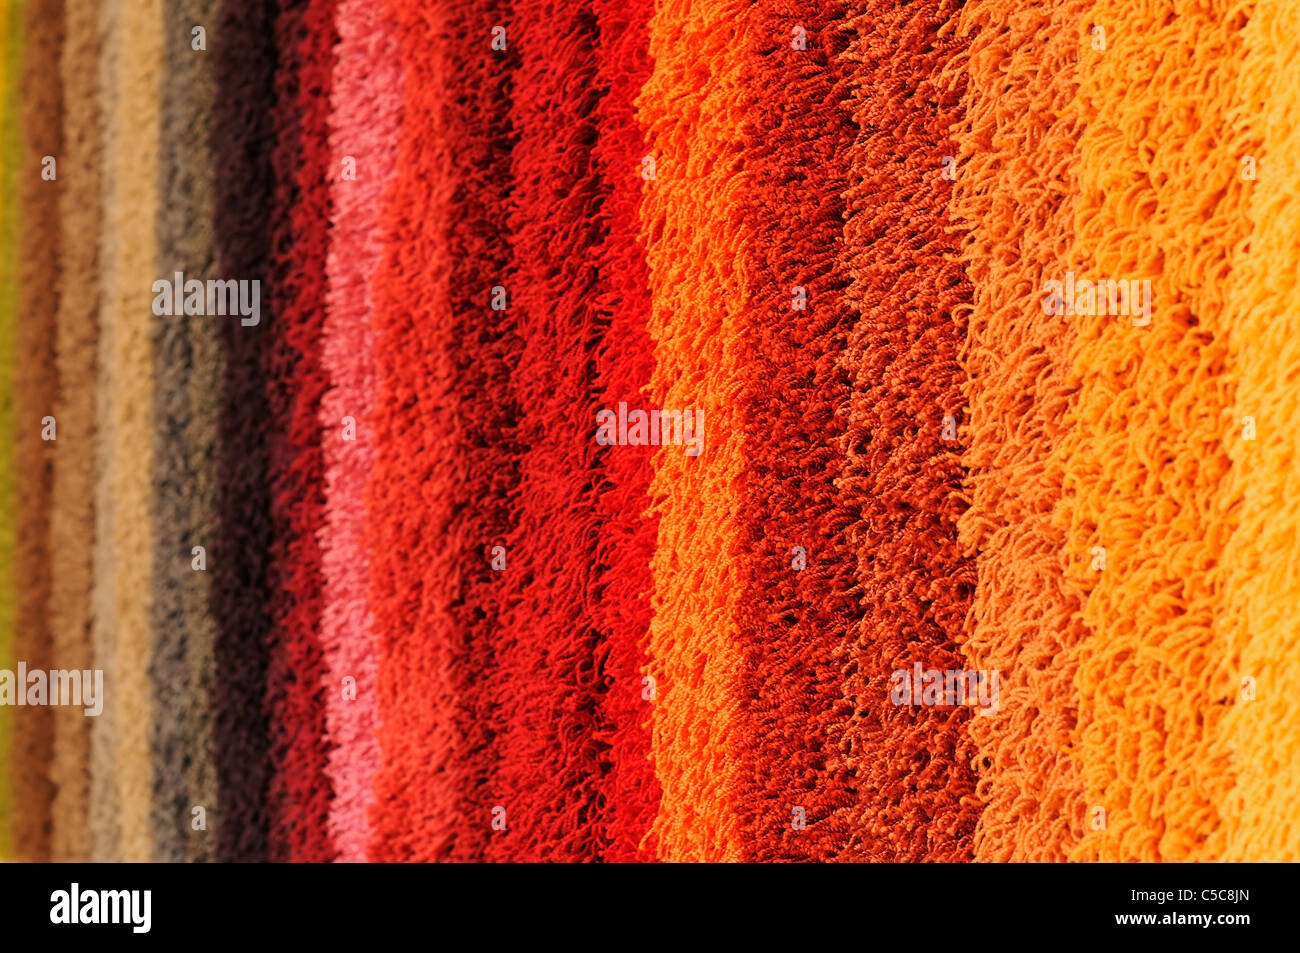 El espectro de color de las muestras de alfombras Foto de stock